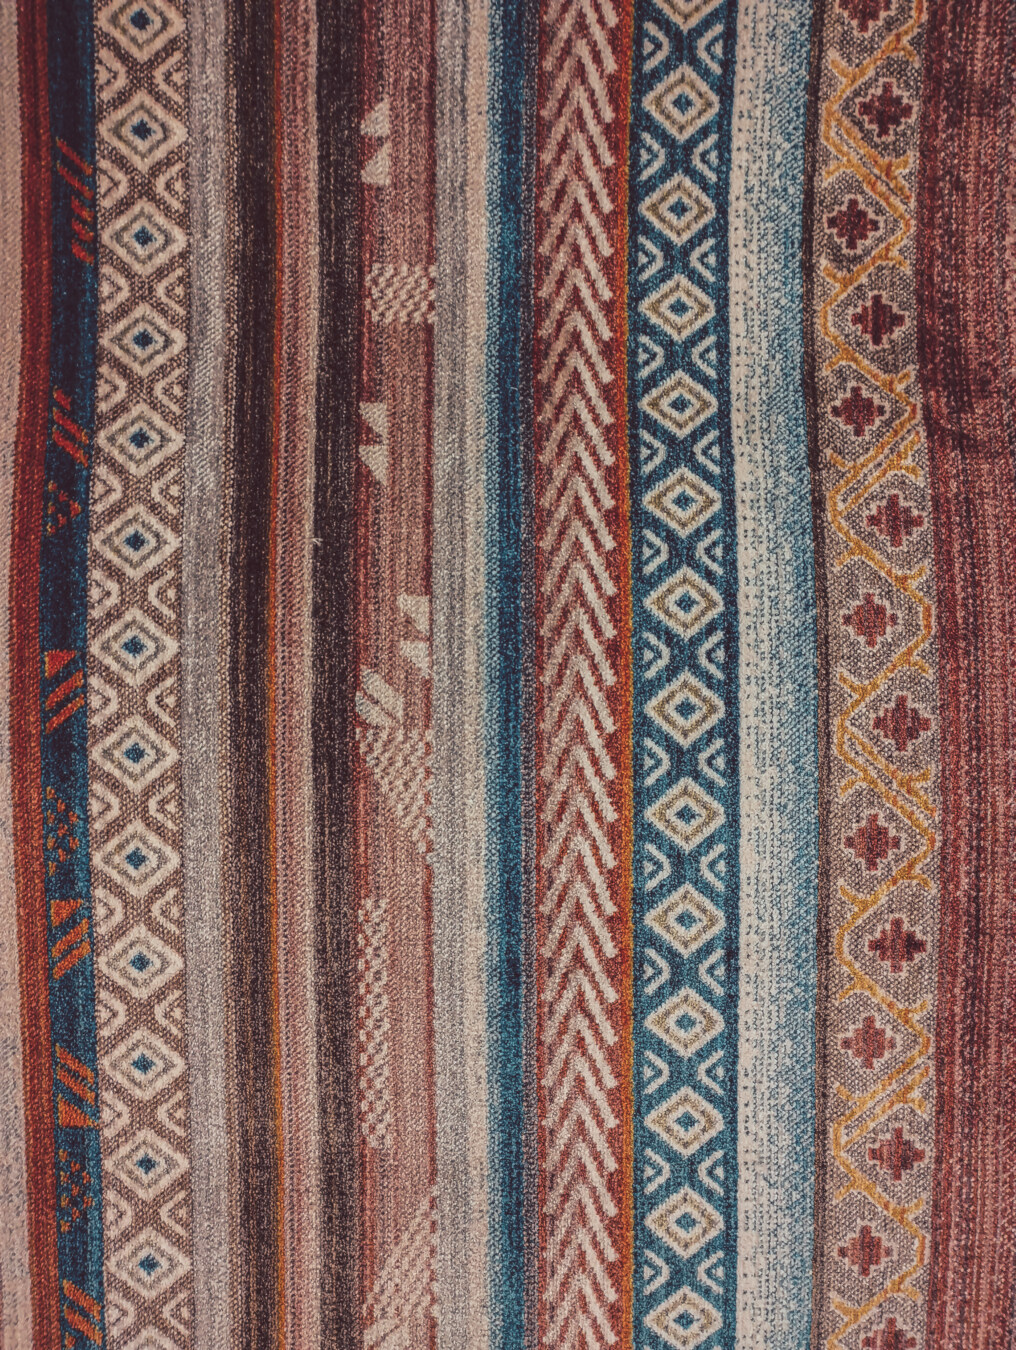 Orientální, koberec, ručně vyráběné, Starověk, vlna, textura, dekorace, fabric, koberec, vzor